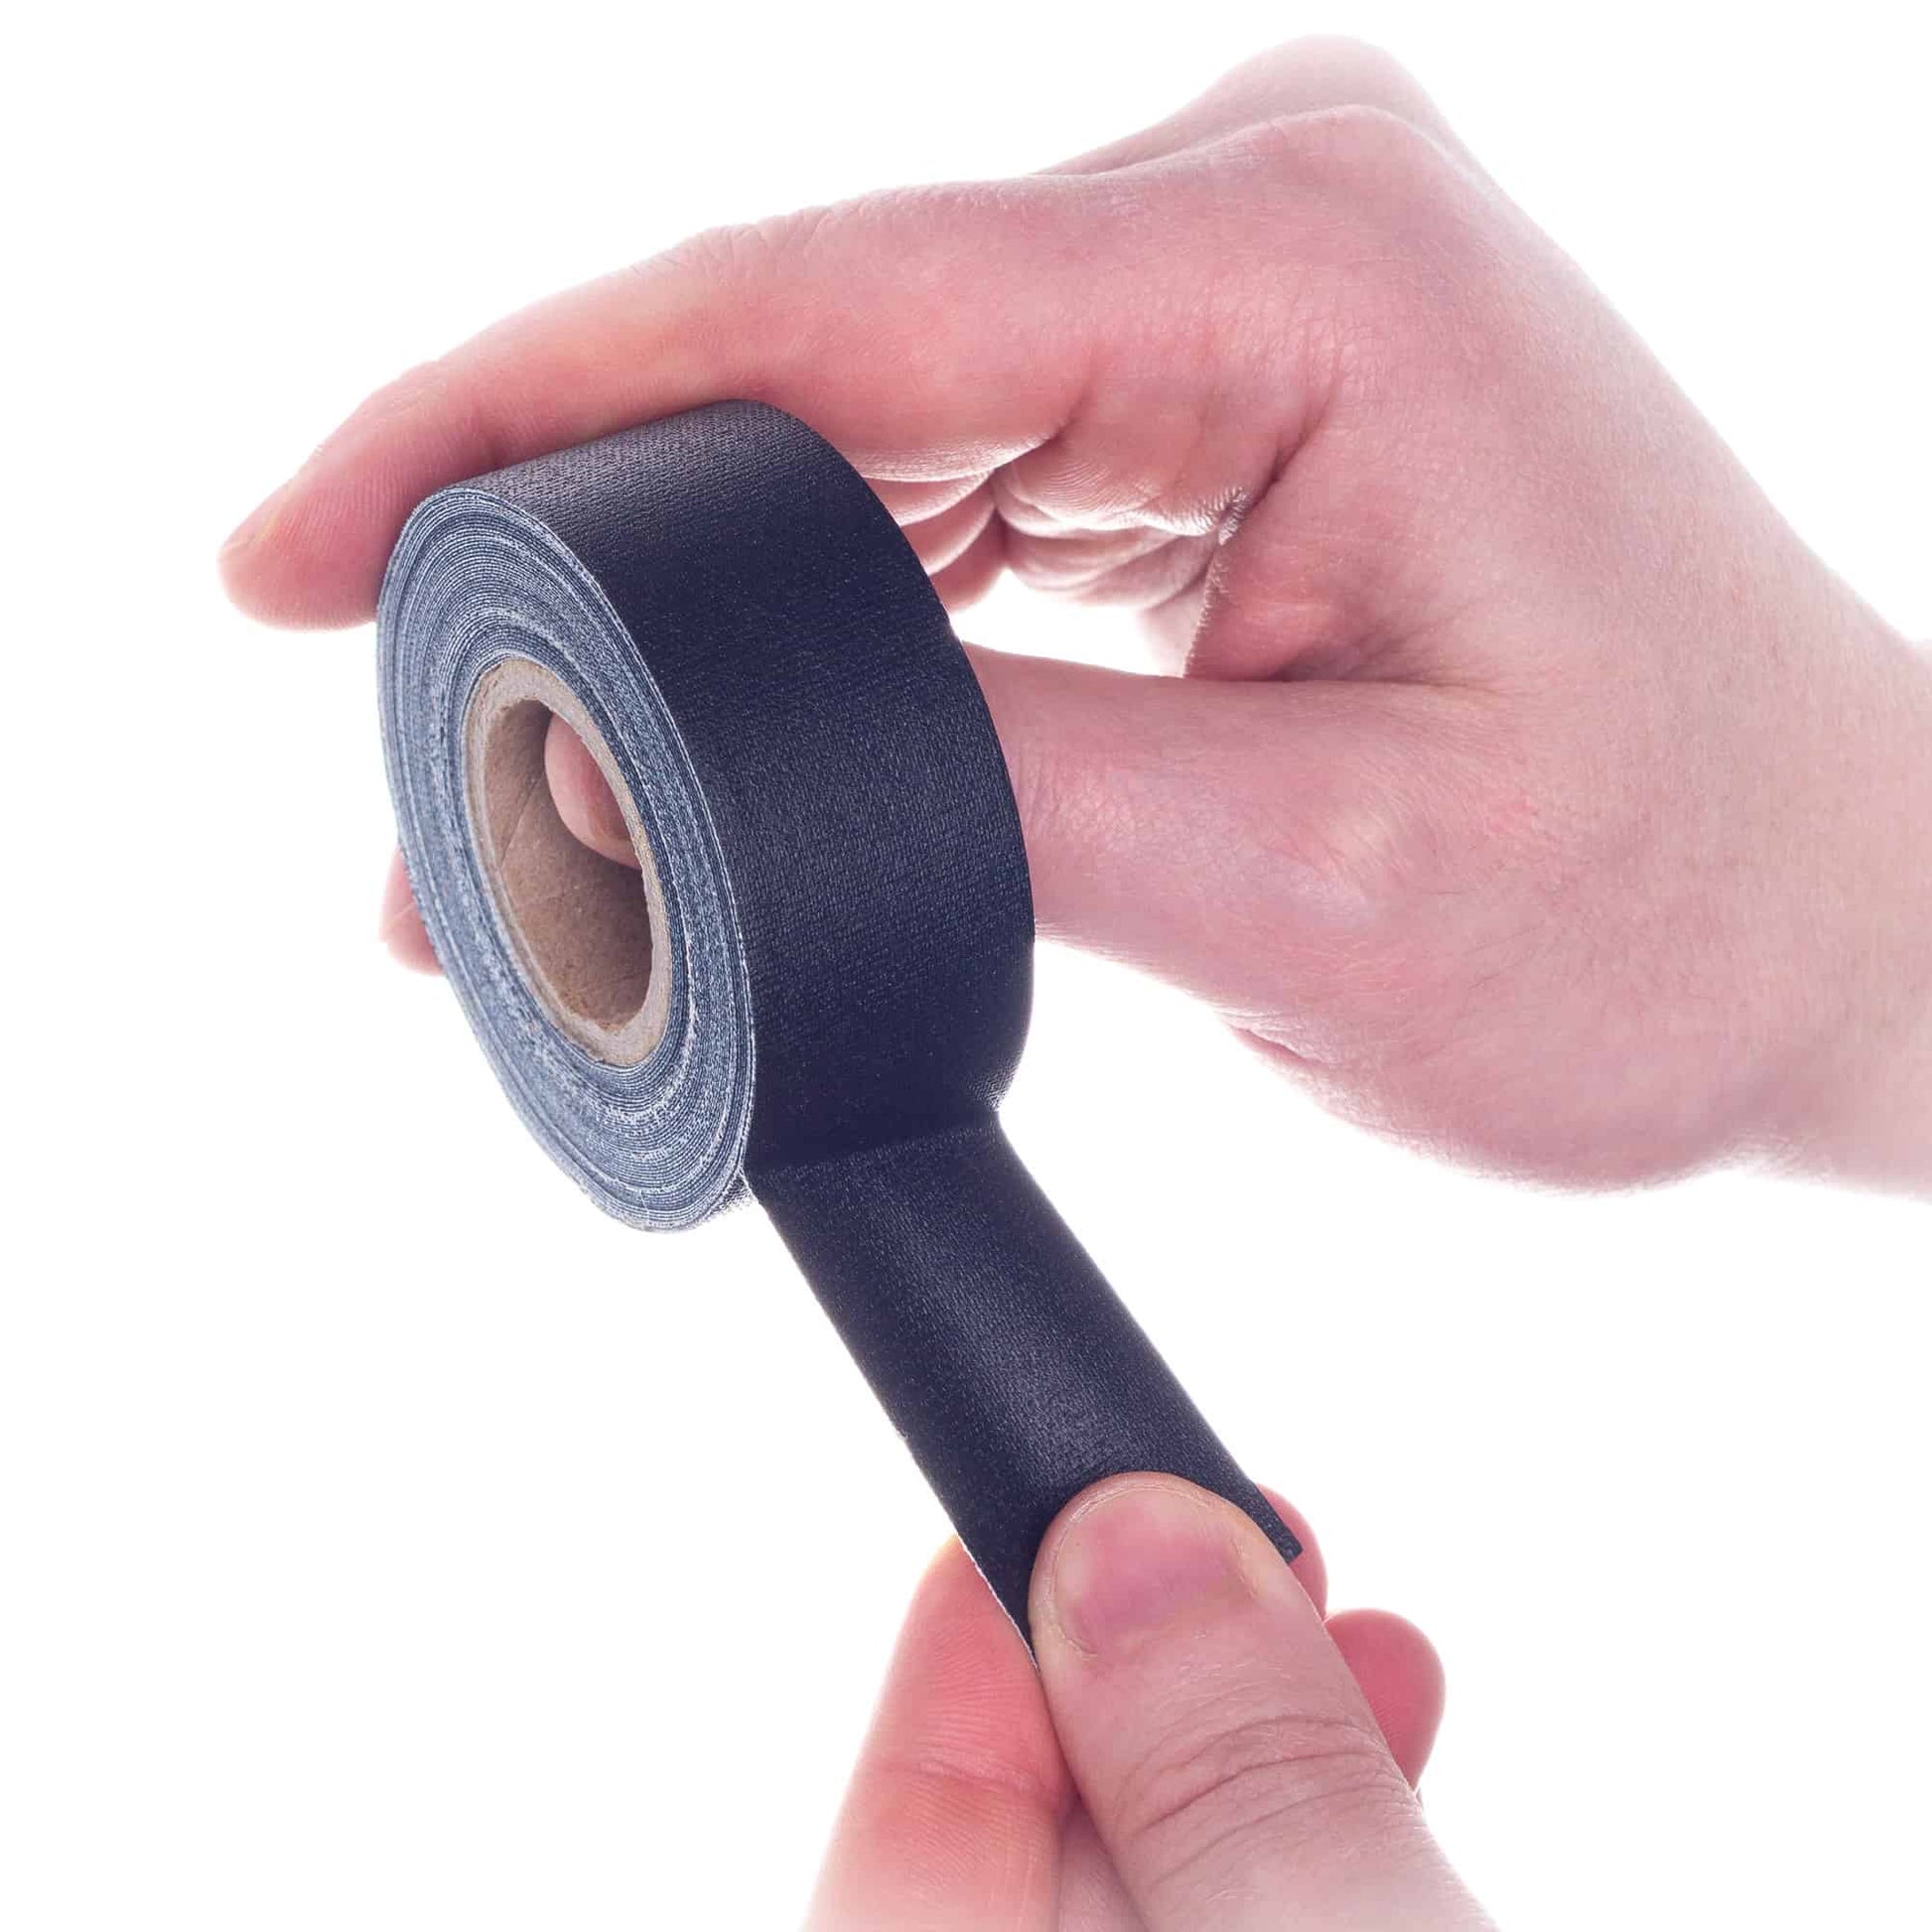 1 x 8 Yard Mini Roll Paper Tapes (aka Spike Tape) Black